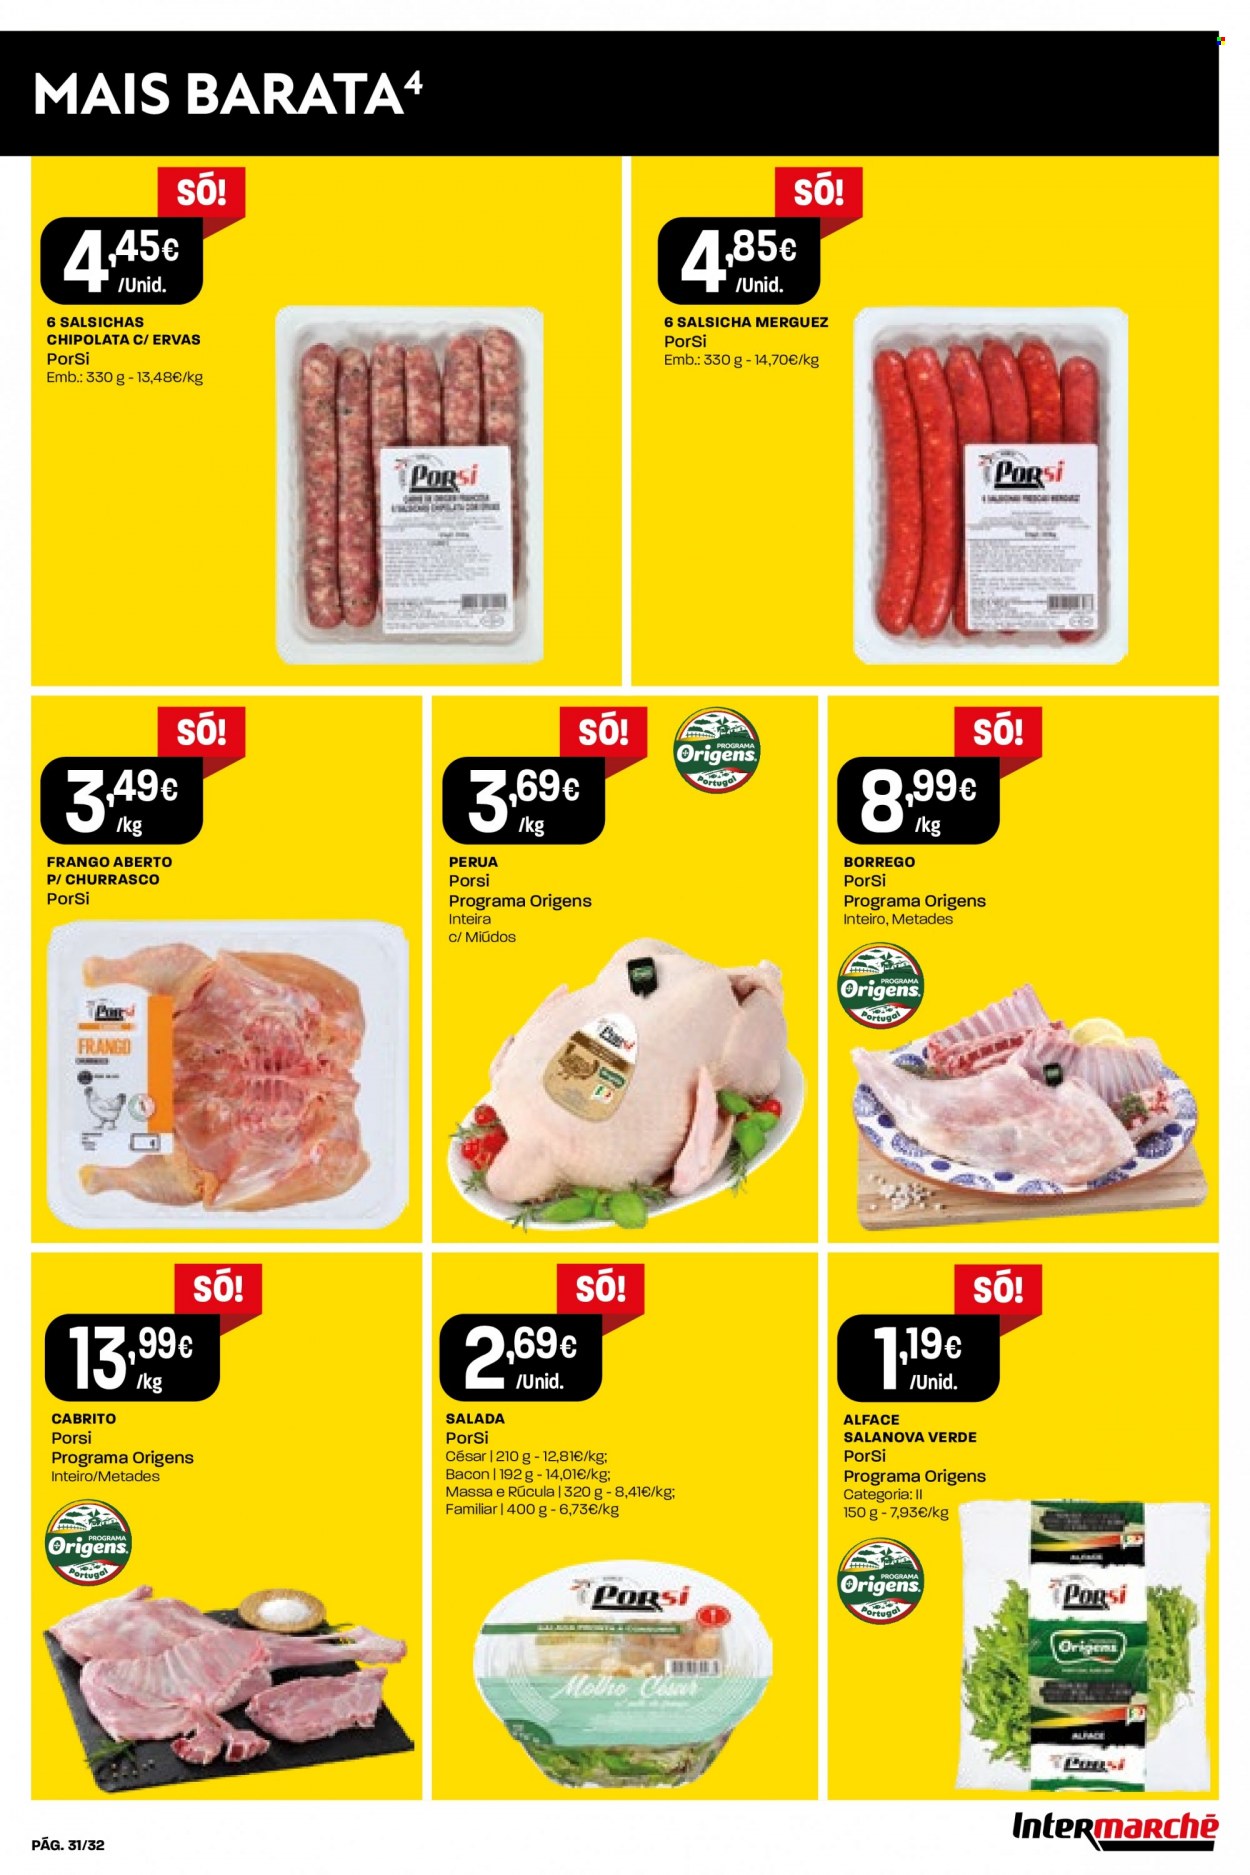 thumbnail - Folheto Intermarché - 1.12.2022 - 7.12.2022 - Produtos em promoção - alface, rúcula, cabrito, bacon, salsicha, molho. Página 31.